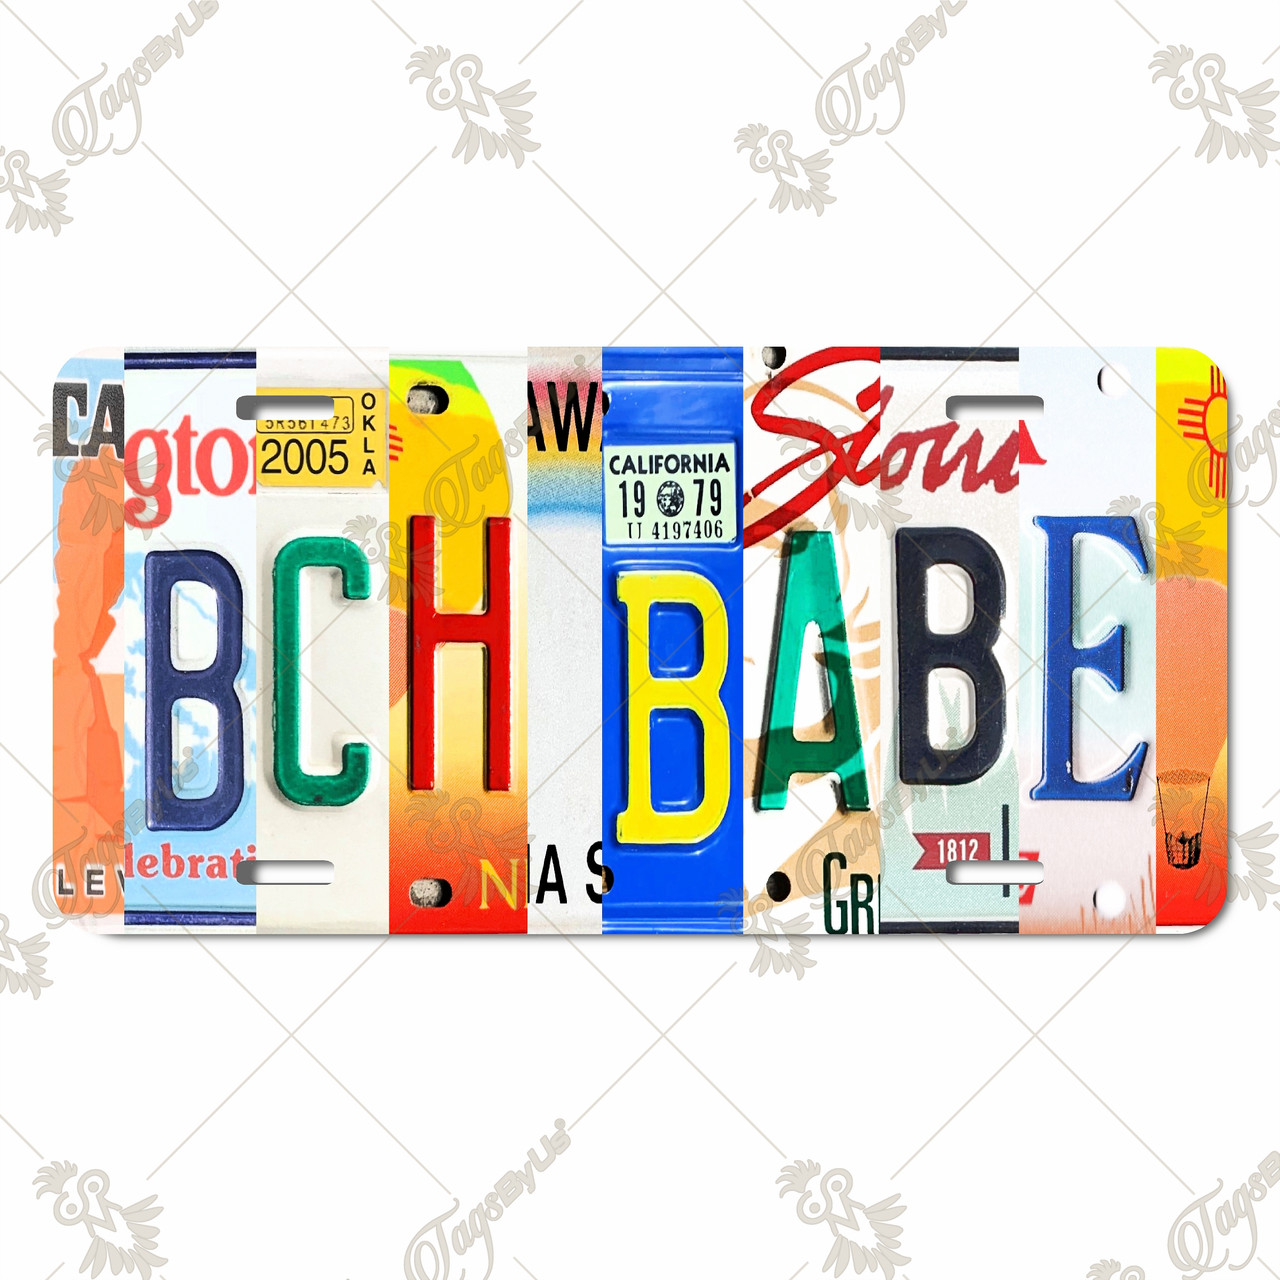 Beach Babe Letter Art License Plate